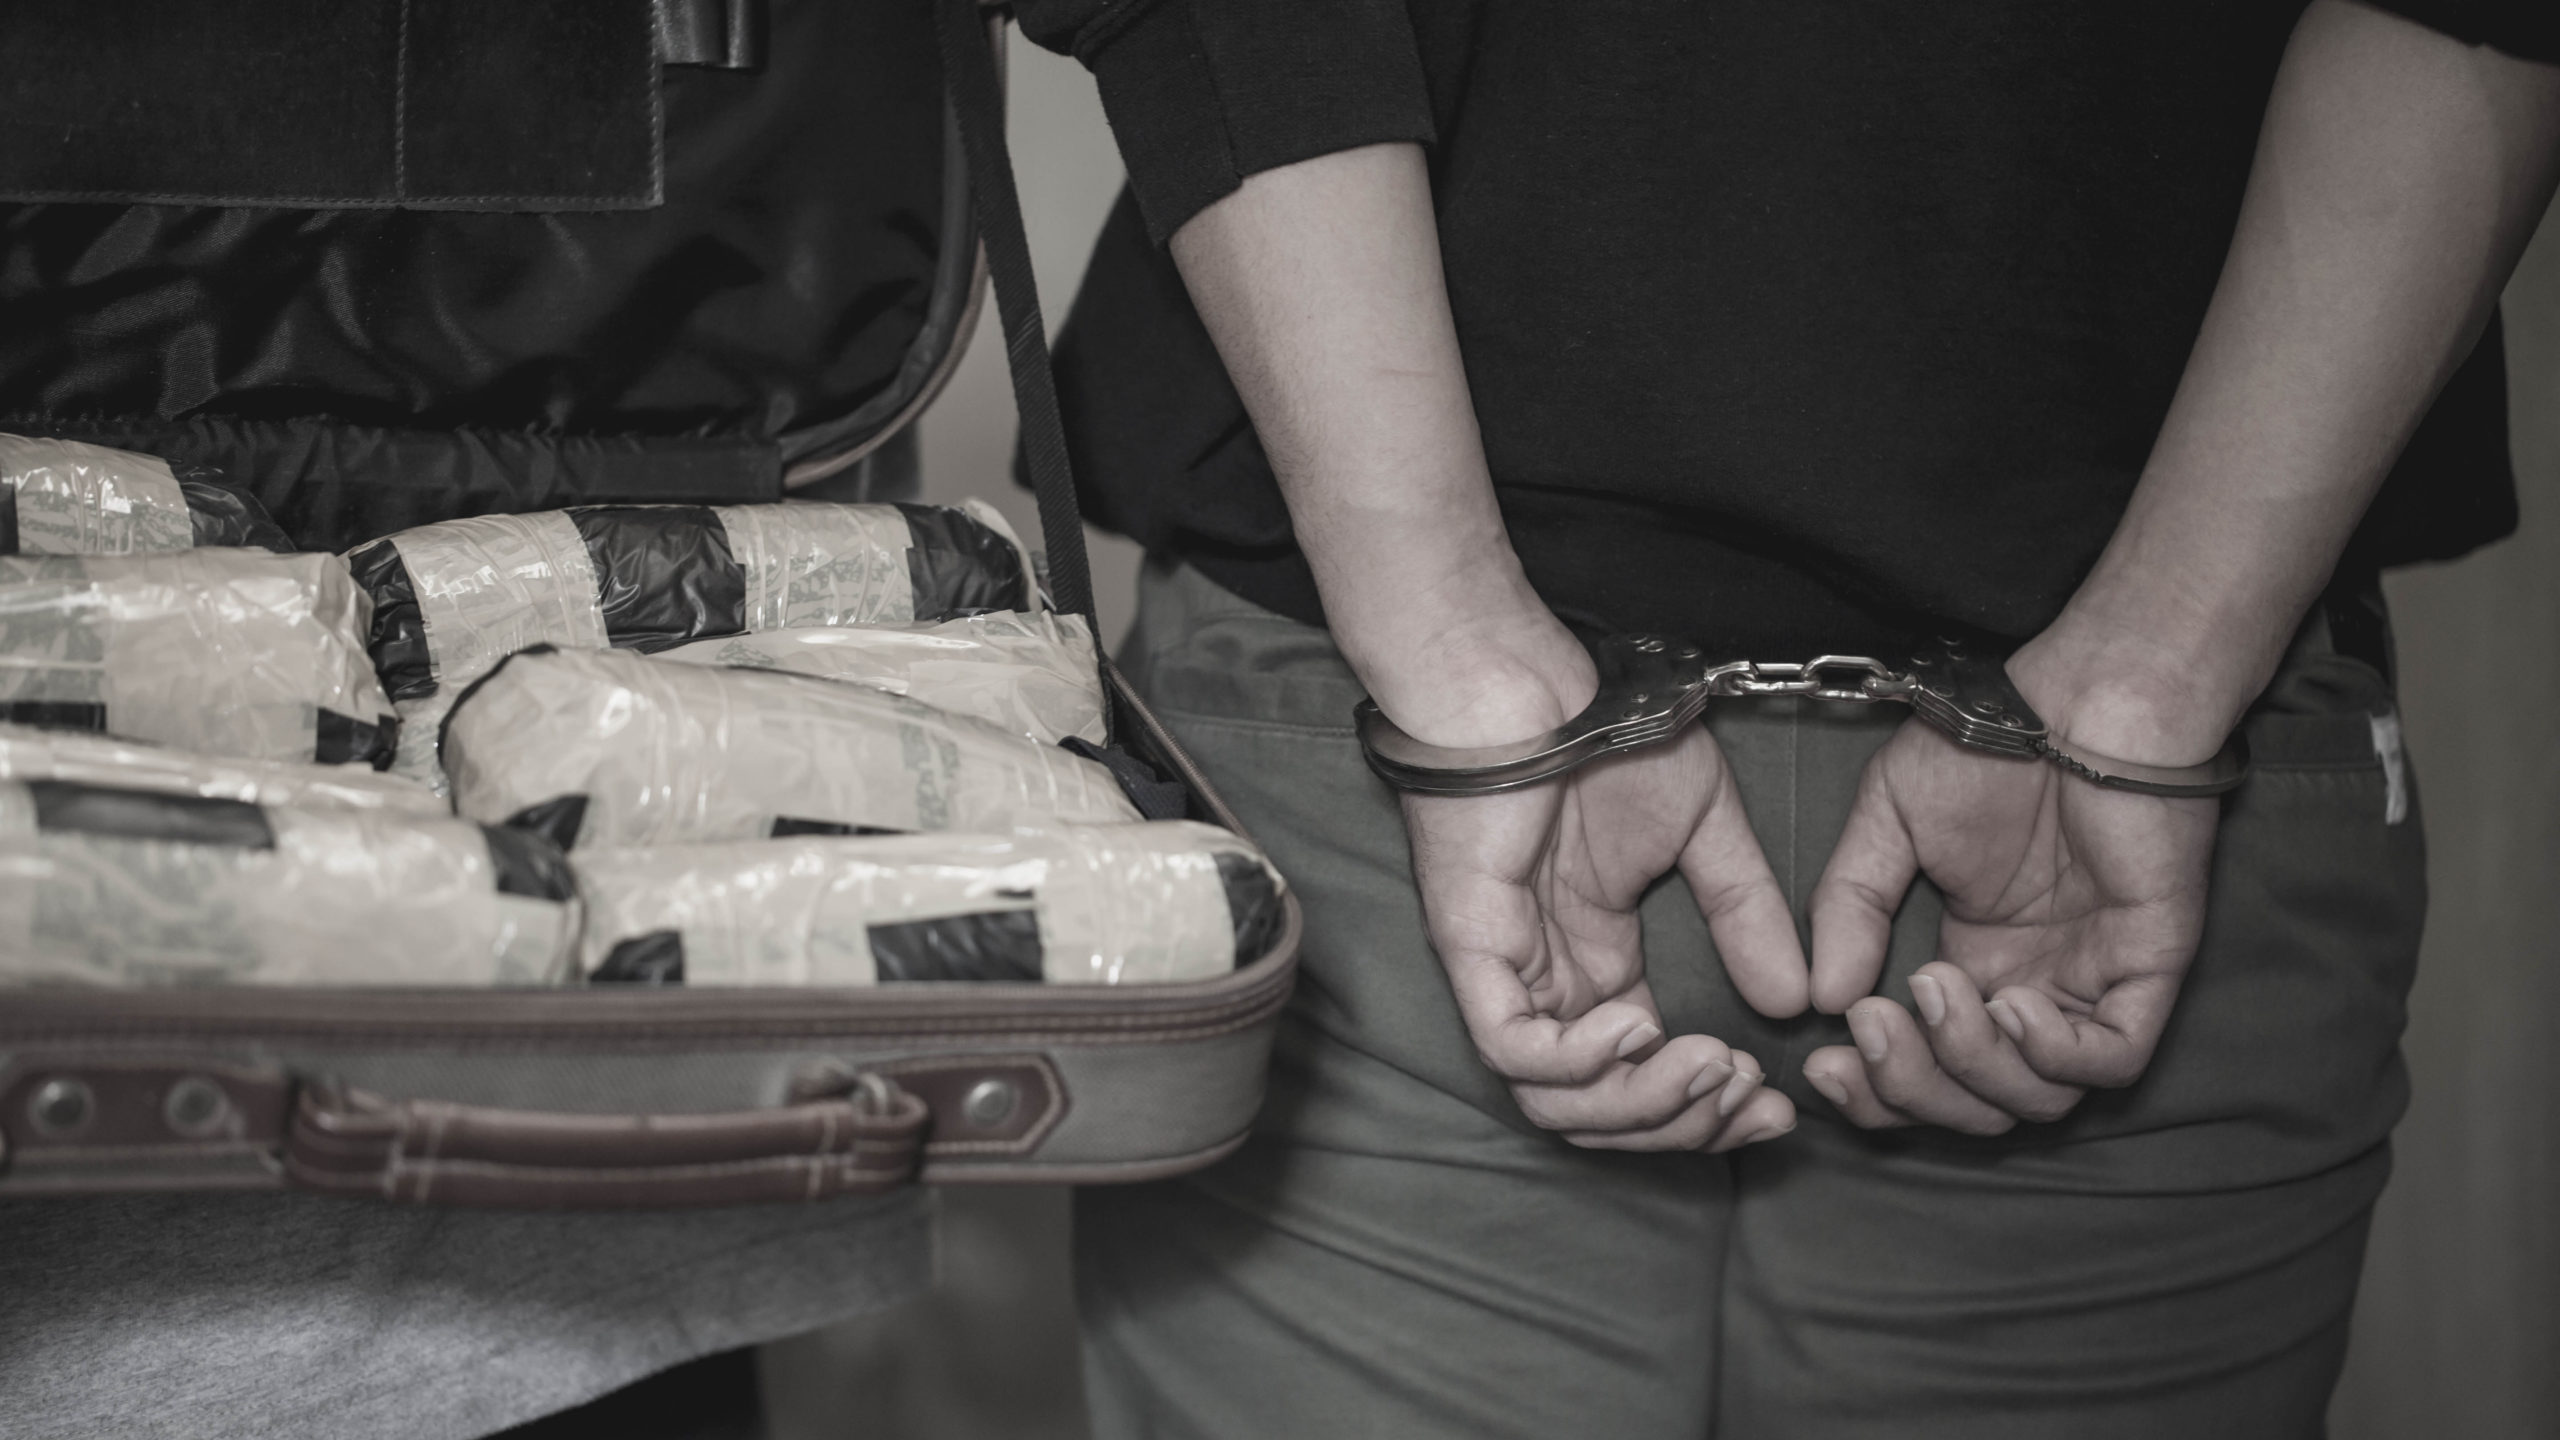 Police arrest drug trafficker with handcuffs. [Shutterstock]